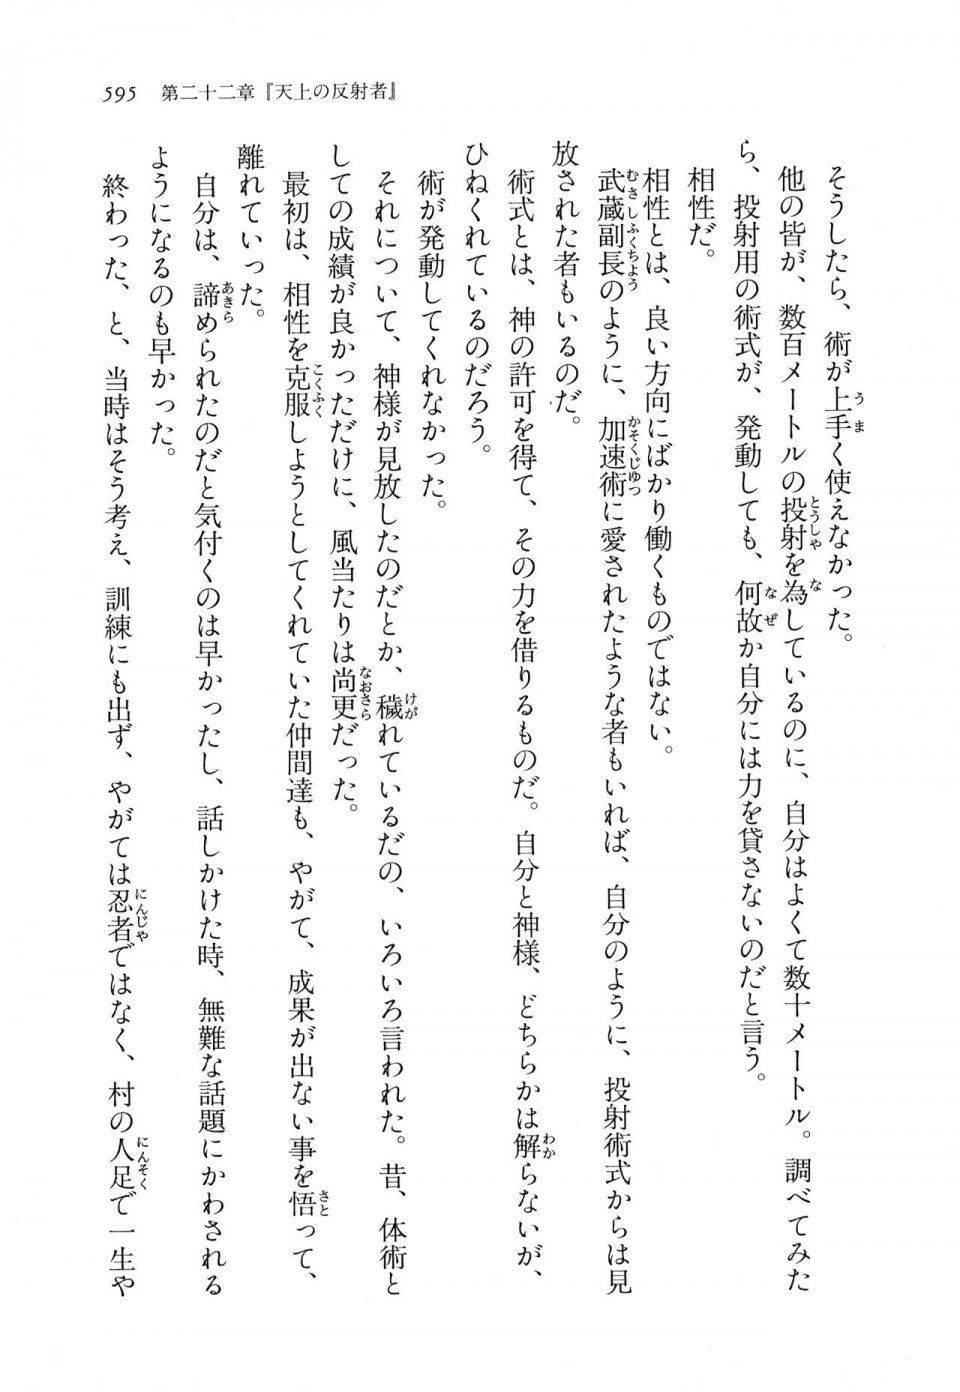 Kyoukai Senjou no Horizon LN Vol 11(5A) - Photo #595